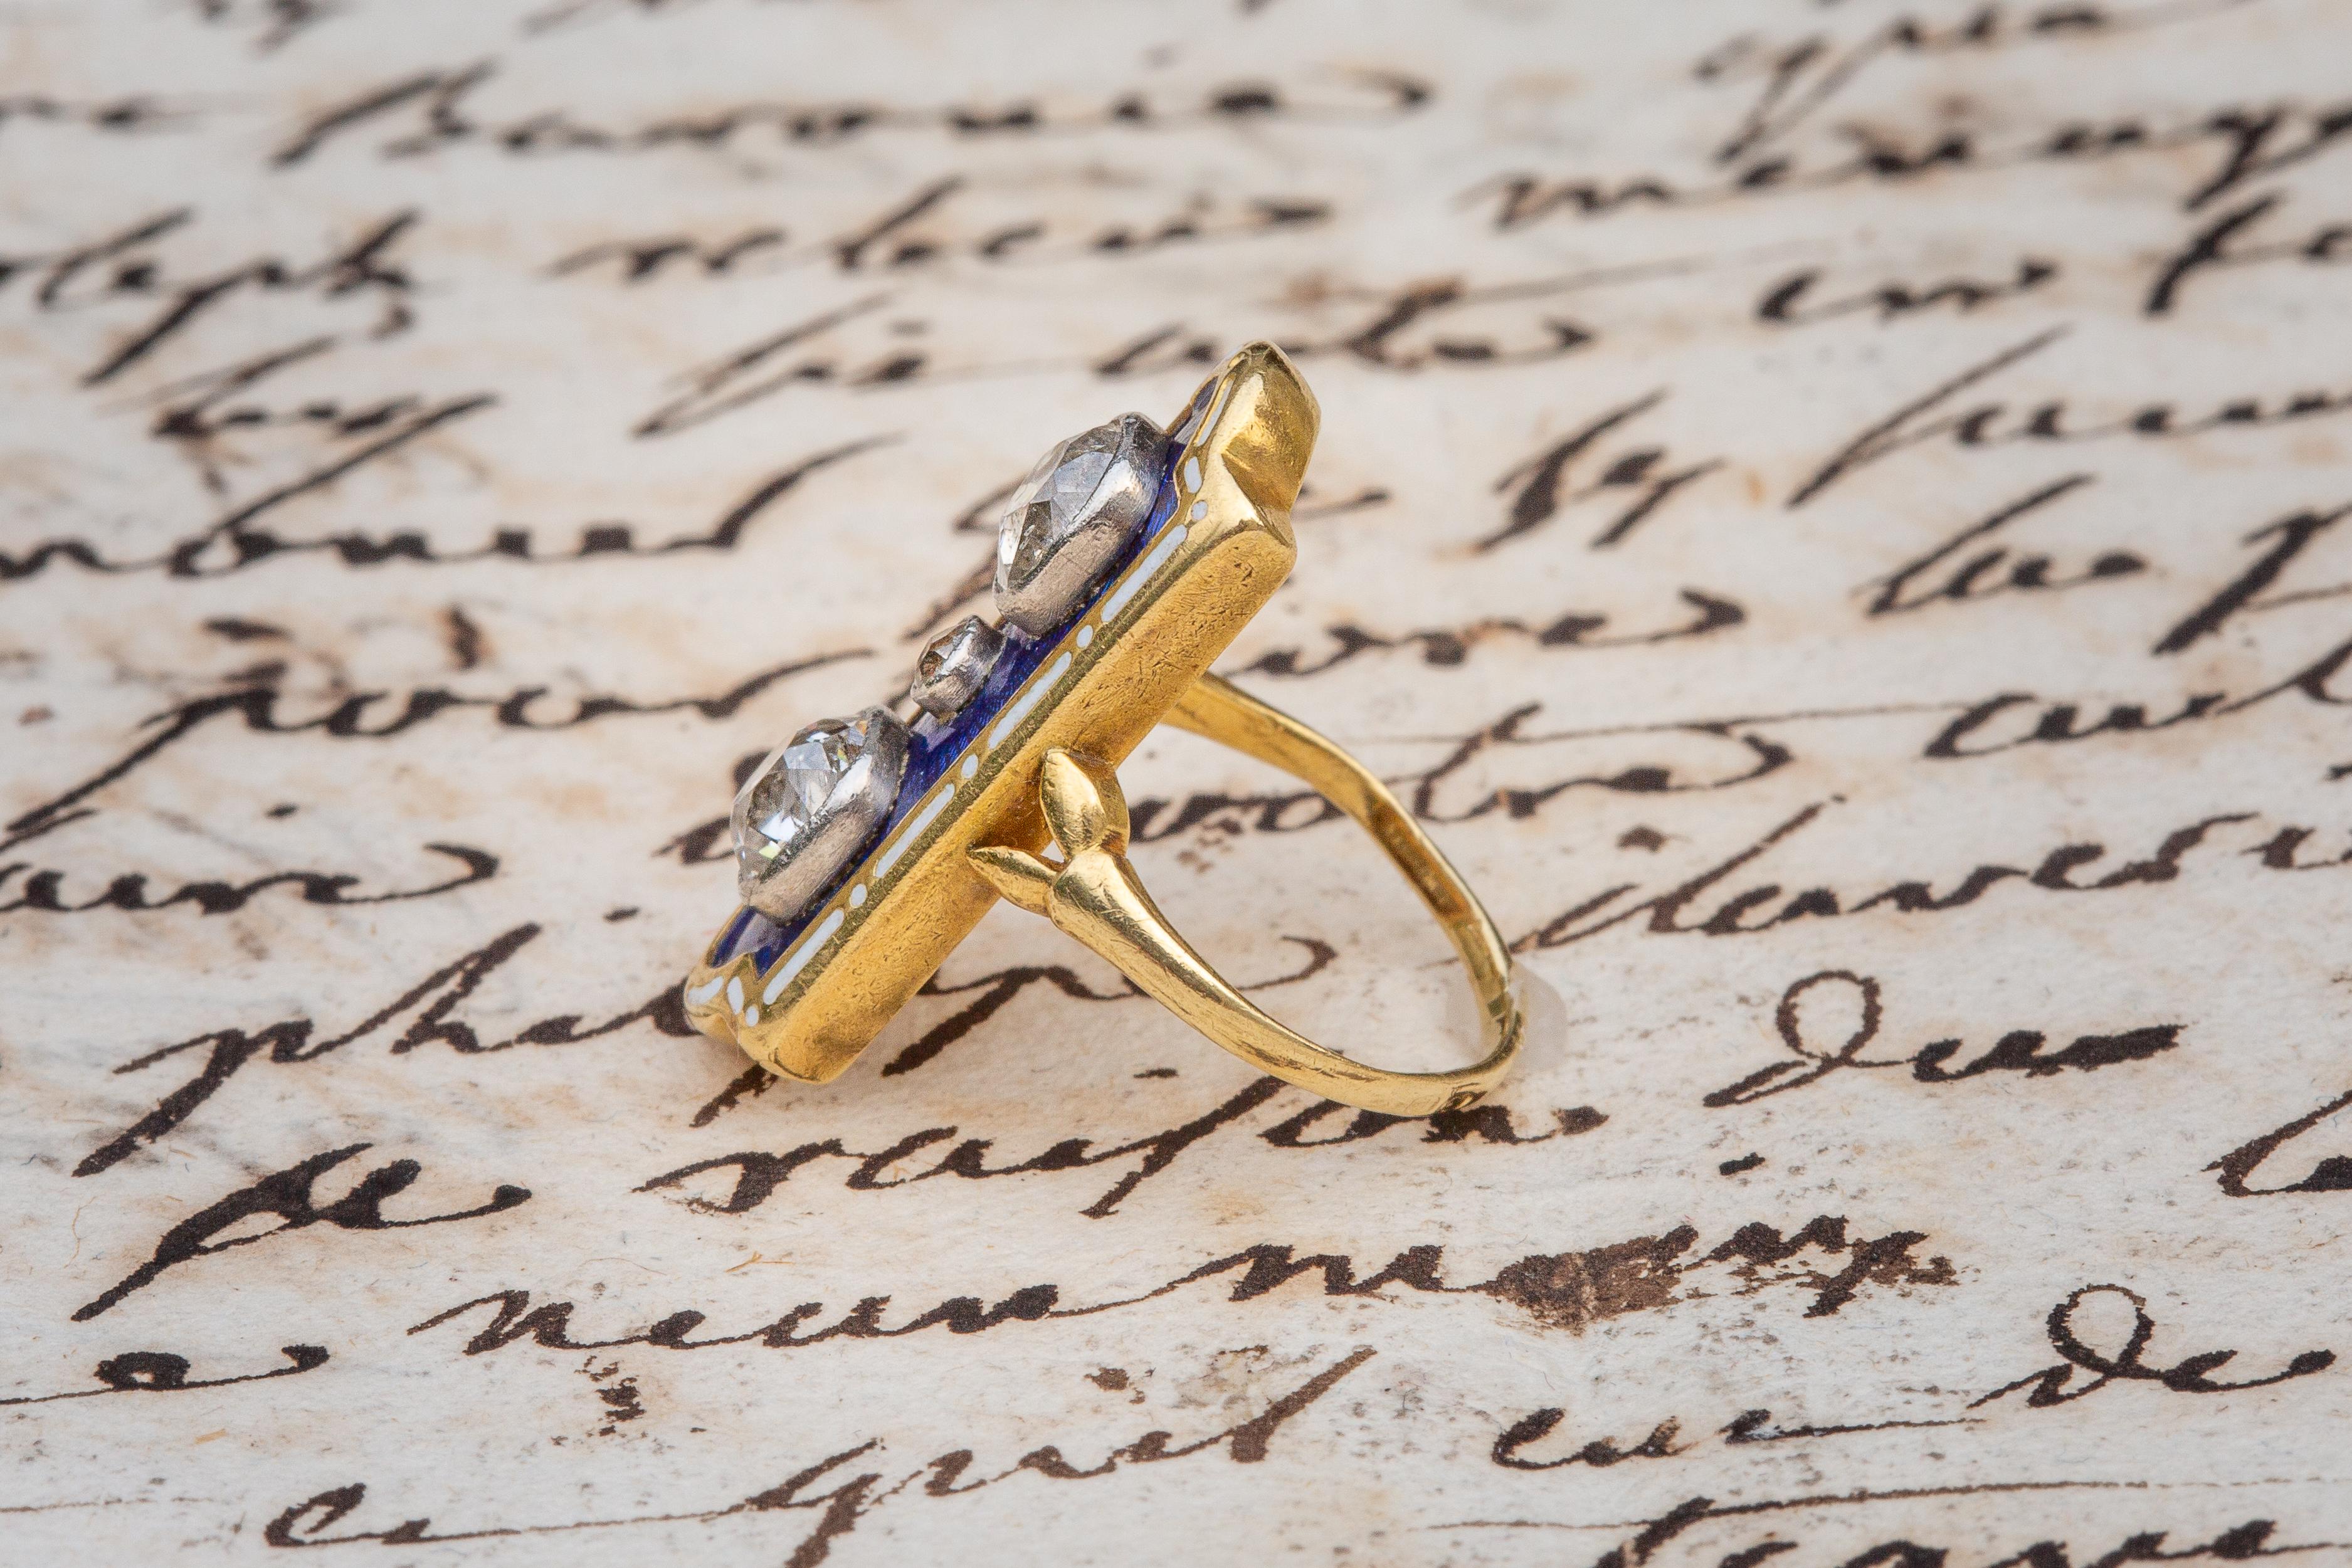 marie antoinette's wedding ring